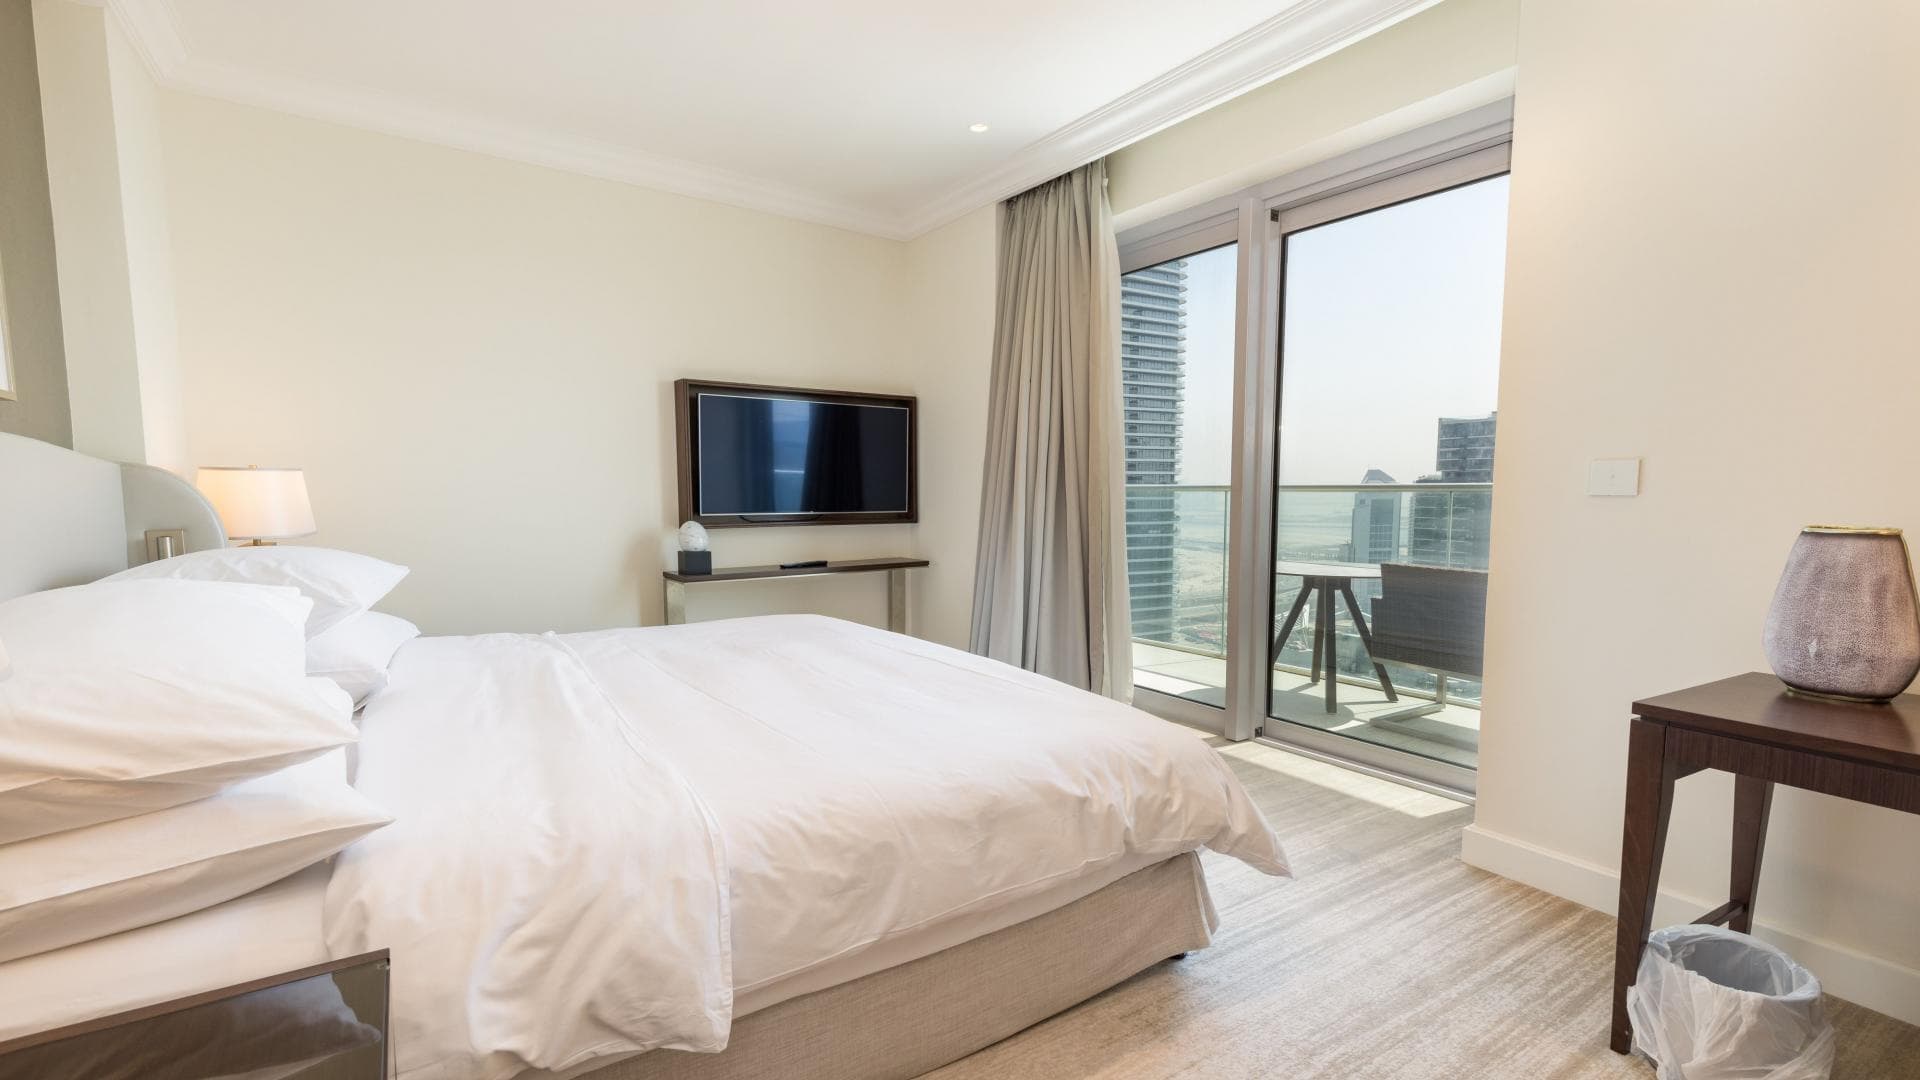 2 Bedroom Apartment For Rent Al Thamam 09 Lp36349 1d29d481da9a6200.jpeg